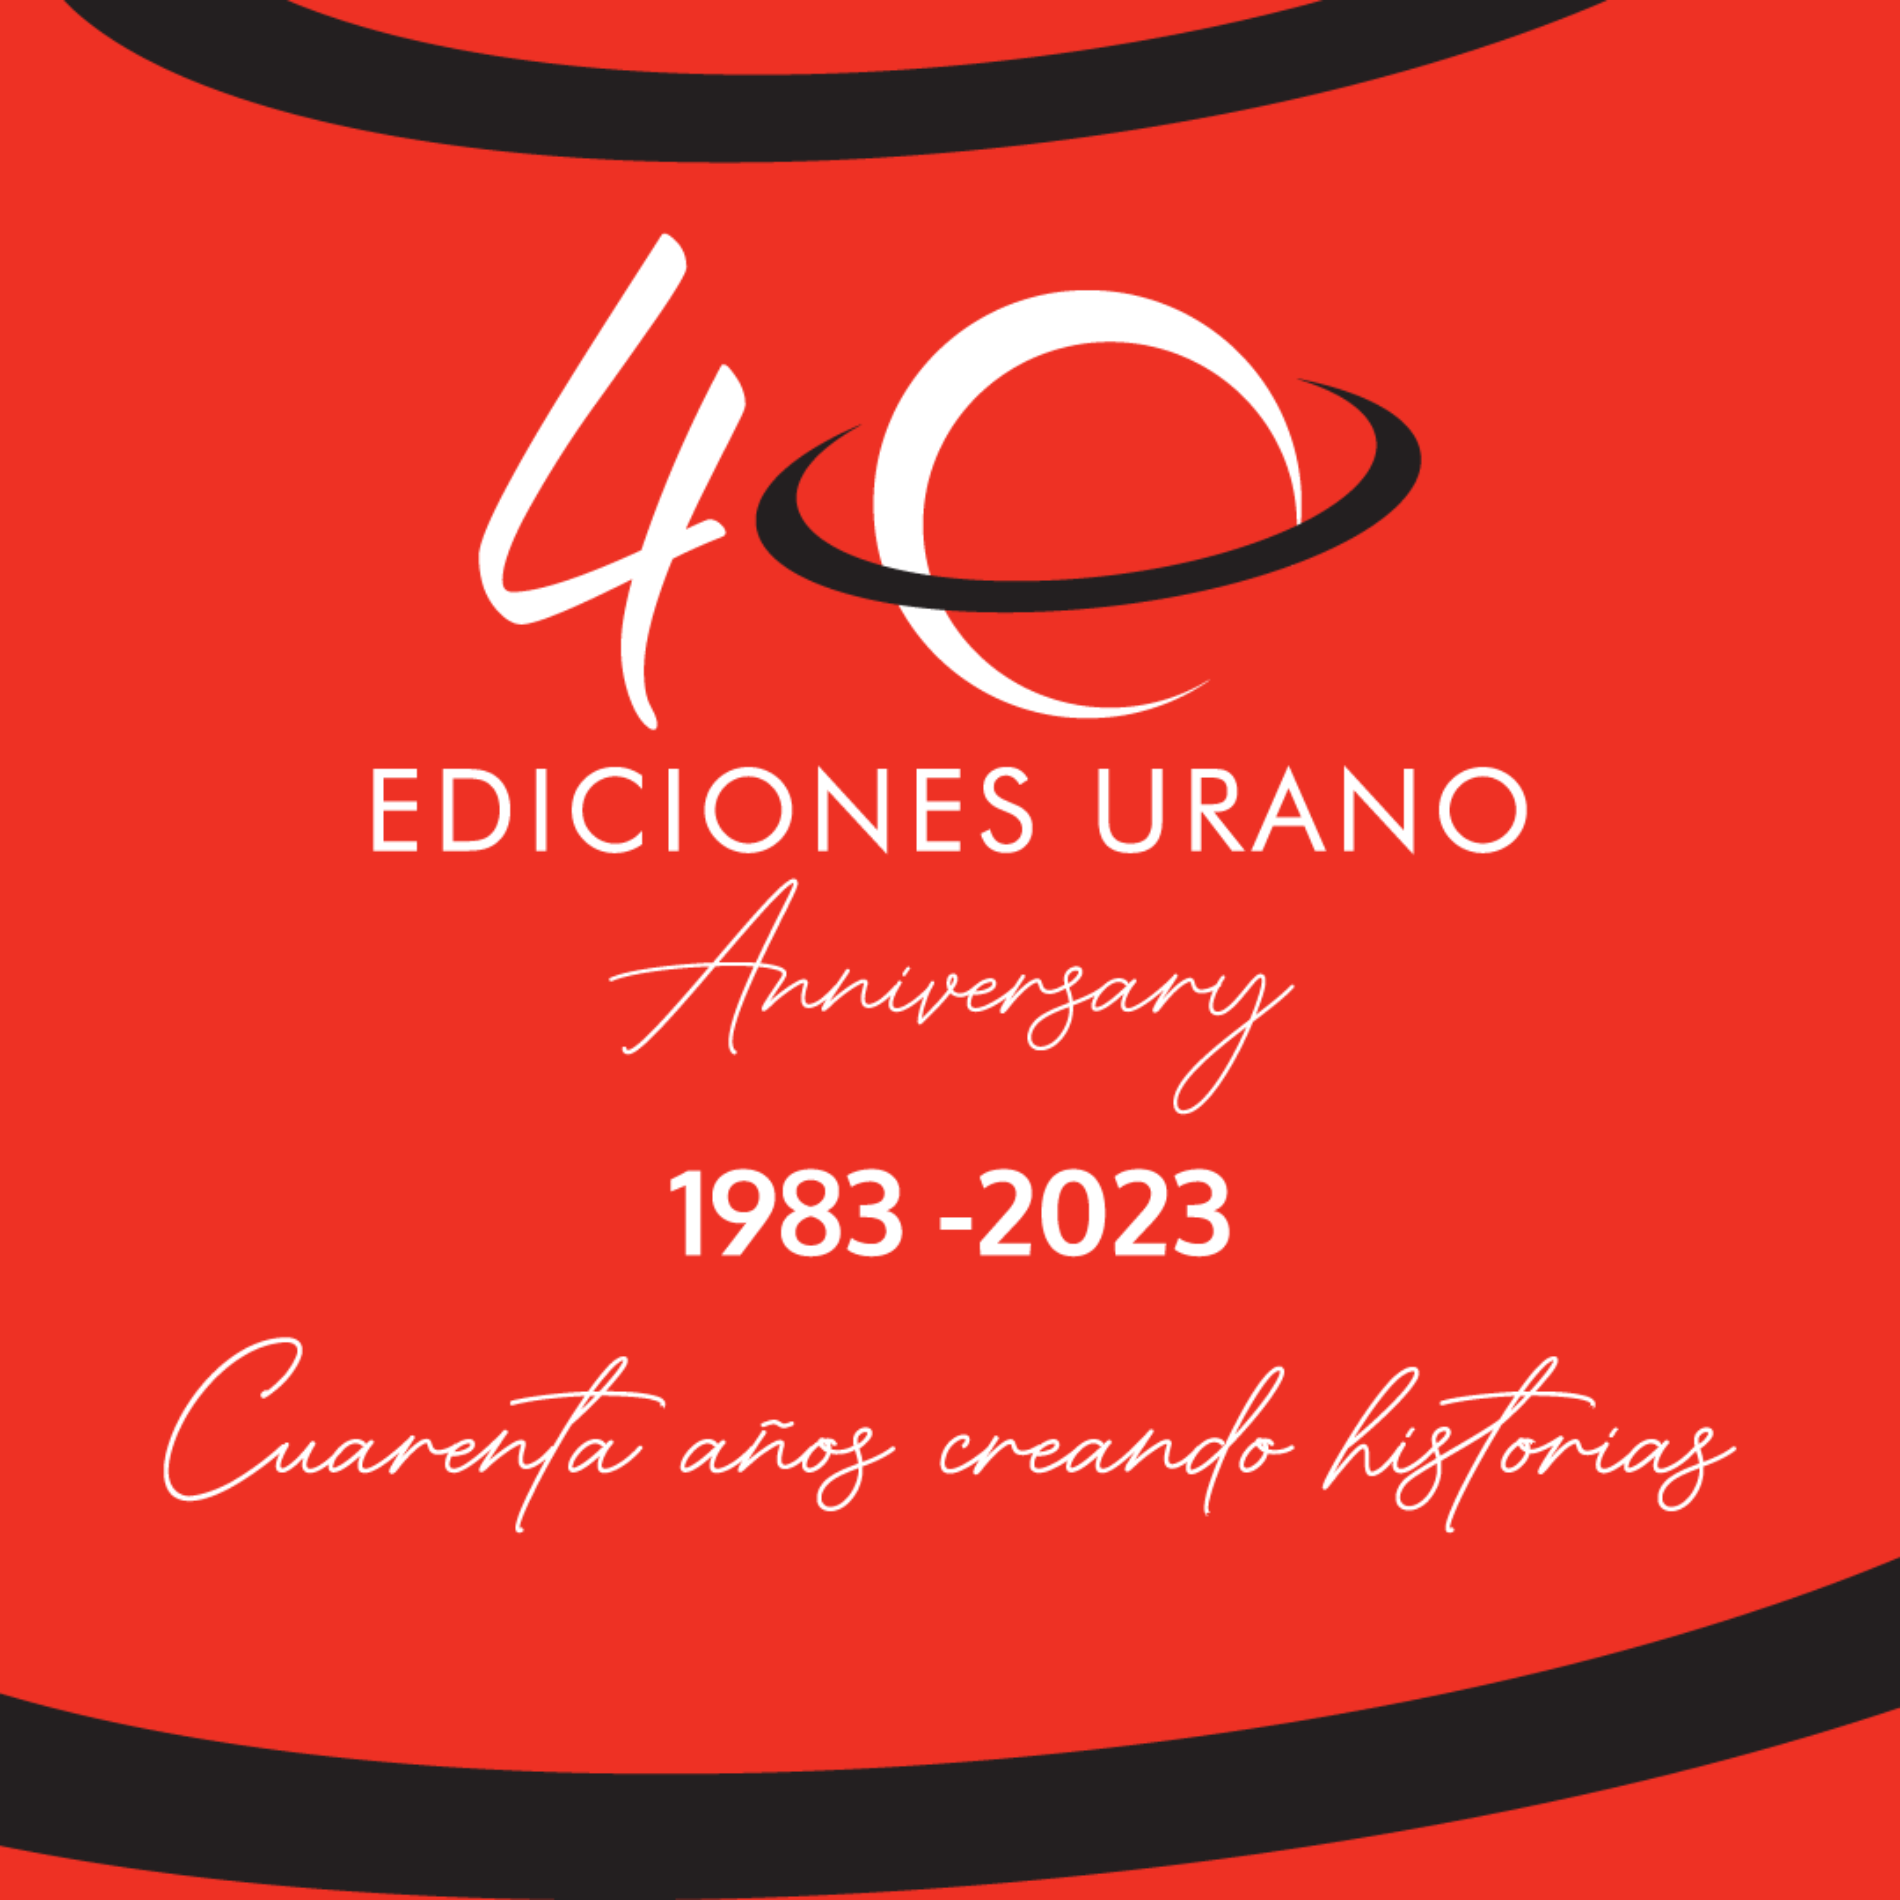 Ediciones Urano cumple 40 años 